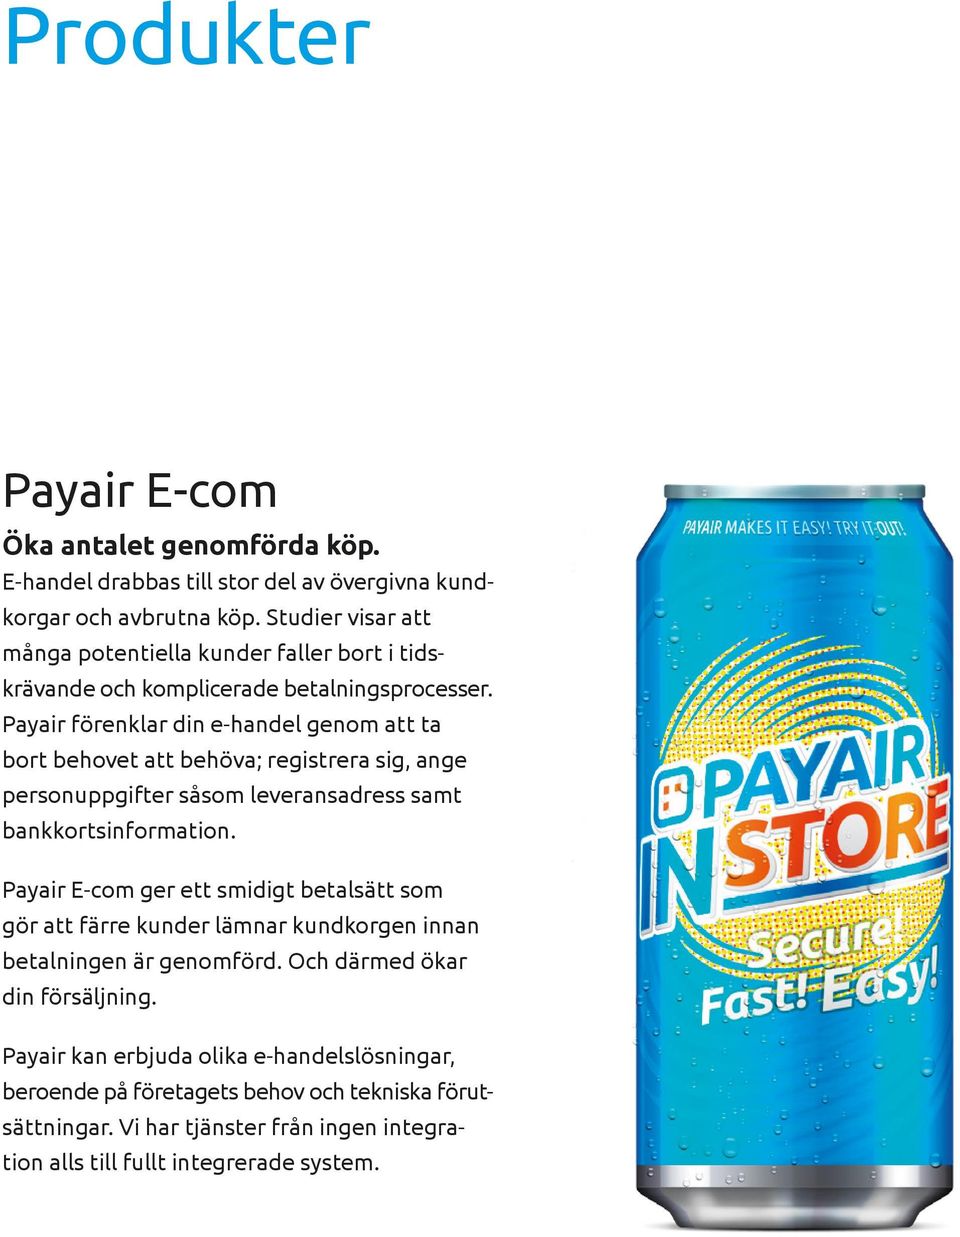 Payair förenklar din e-handel genom att ta bort behovet att behöva; registrera sig, ange personuppgifter såsom leveransadress samt bankkortsinformation.